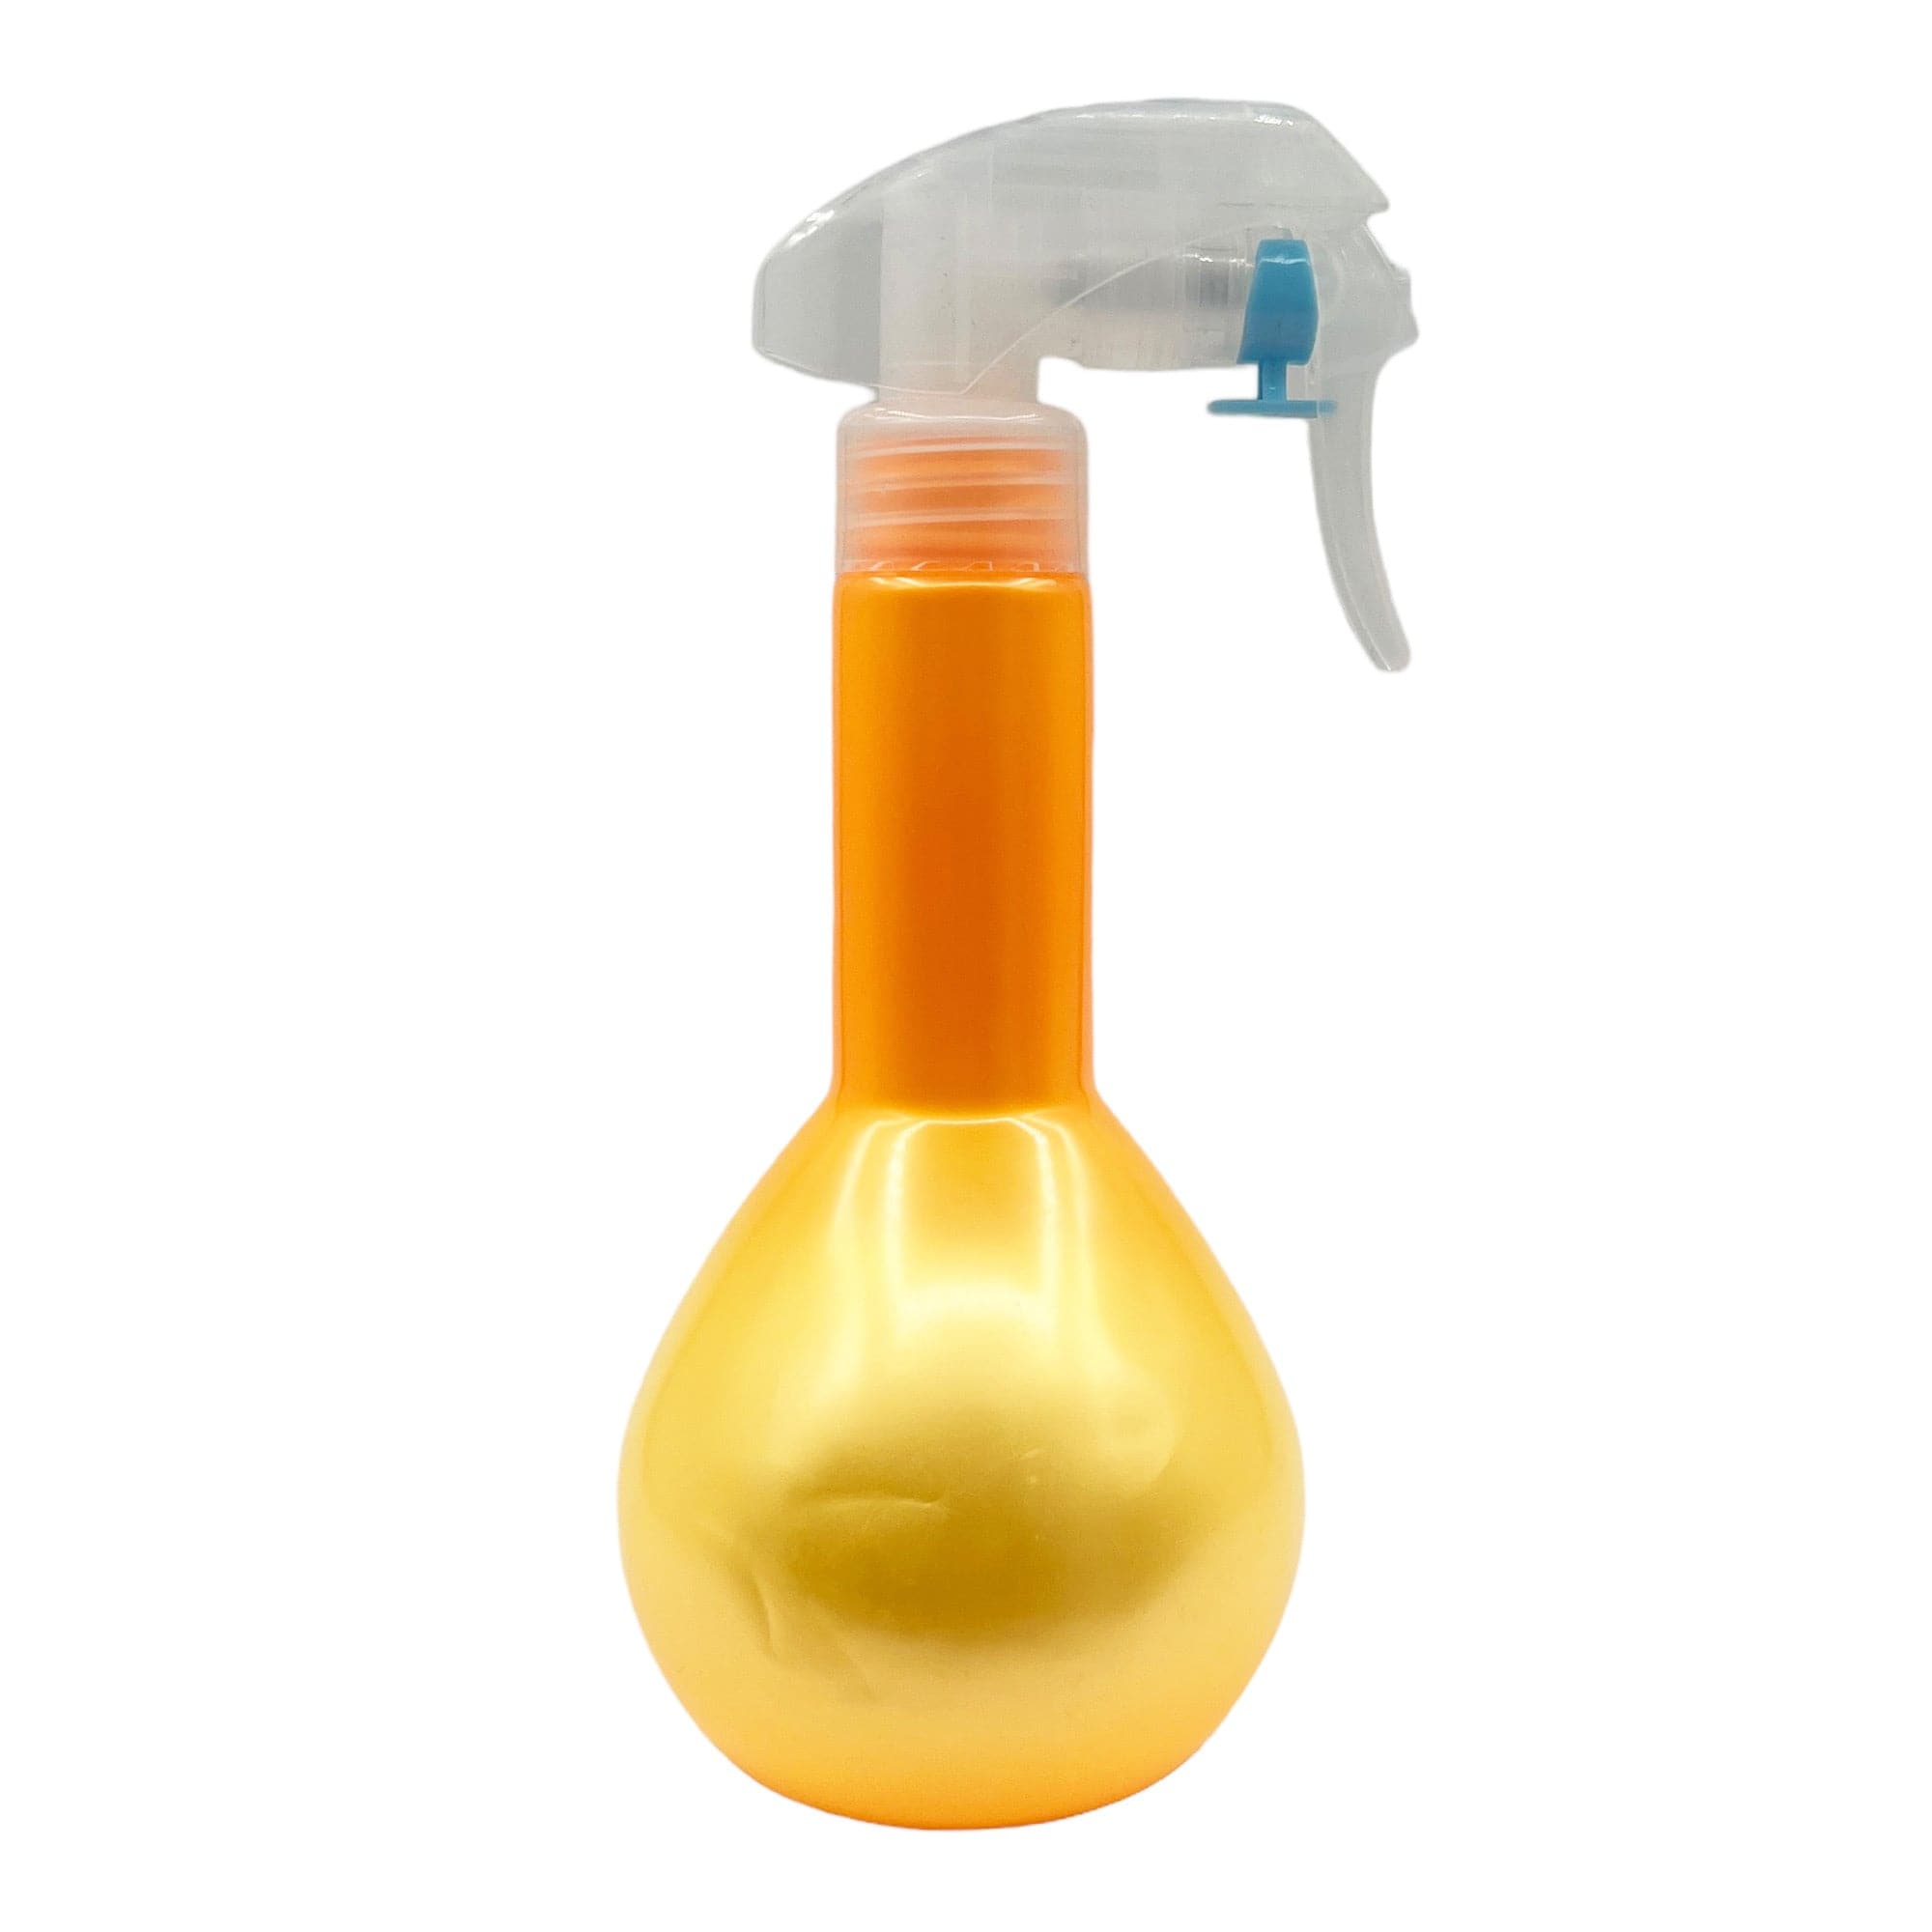 Eson - Water Spray Bottle 300ml Round Empty Refillable Ultra Fine Mist Sprayer (Orange) - Eson Direct